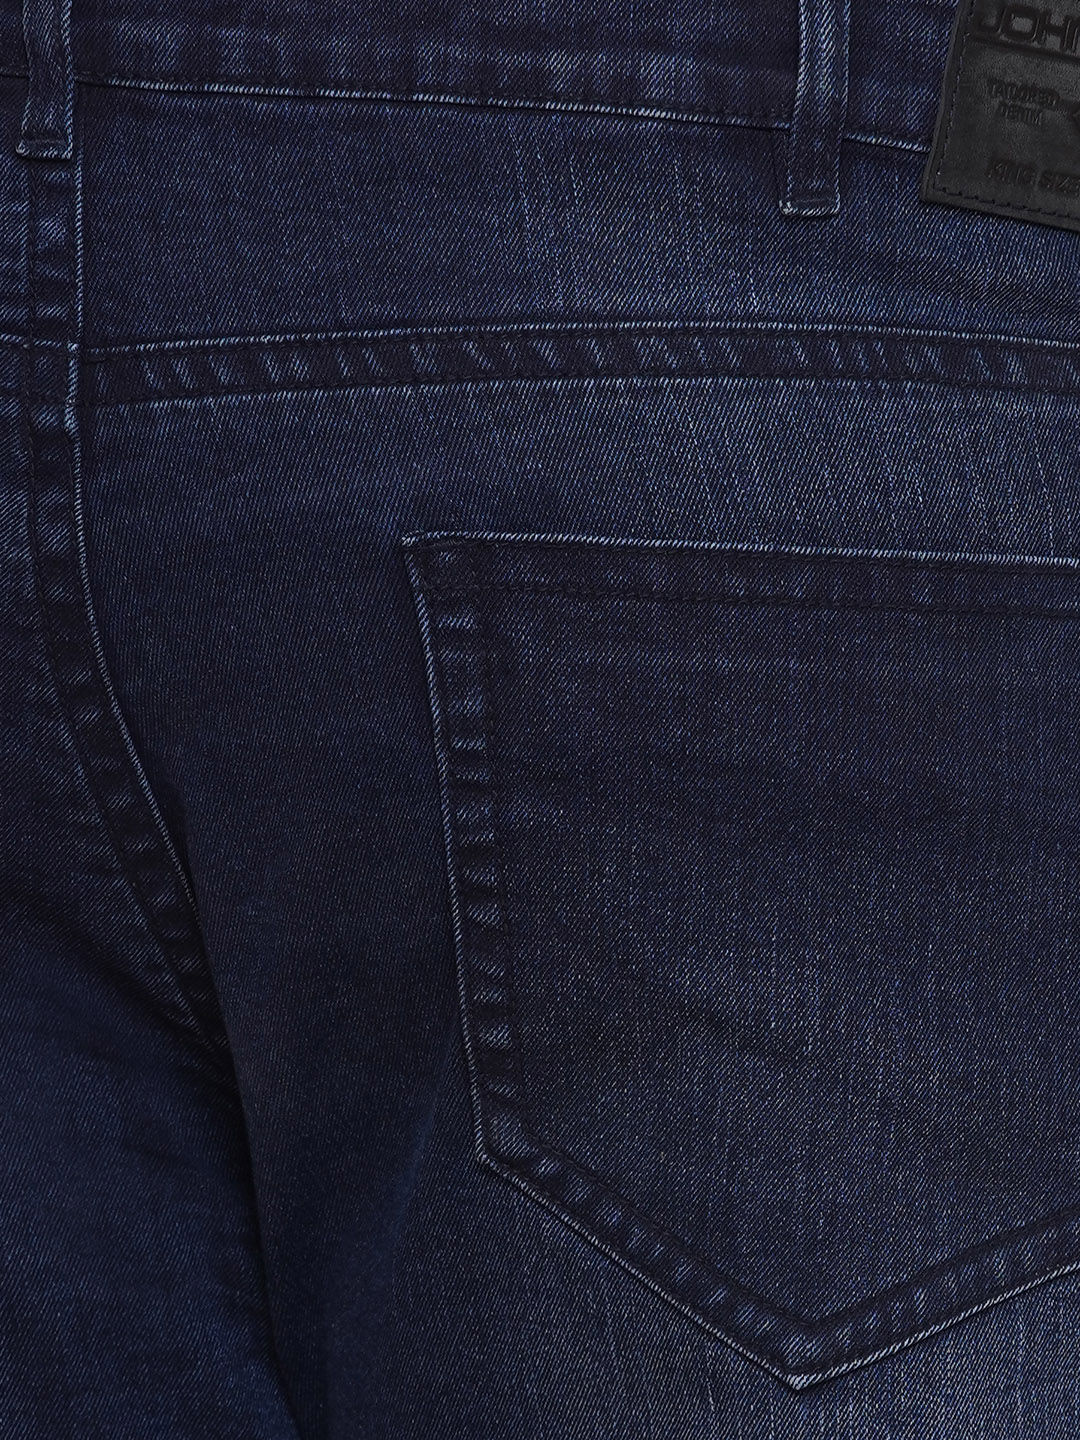 bottomwear/jeans/JPJ12284/jpj12284-2.jpg